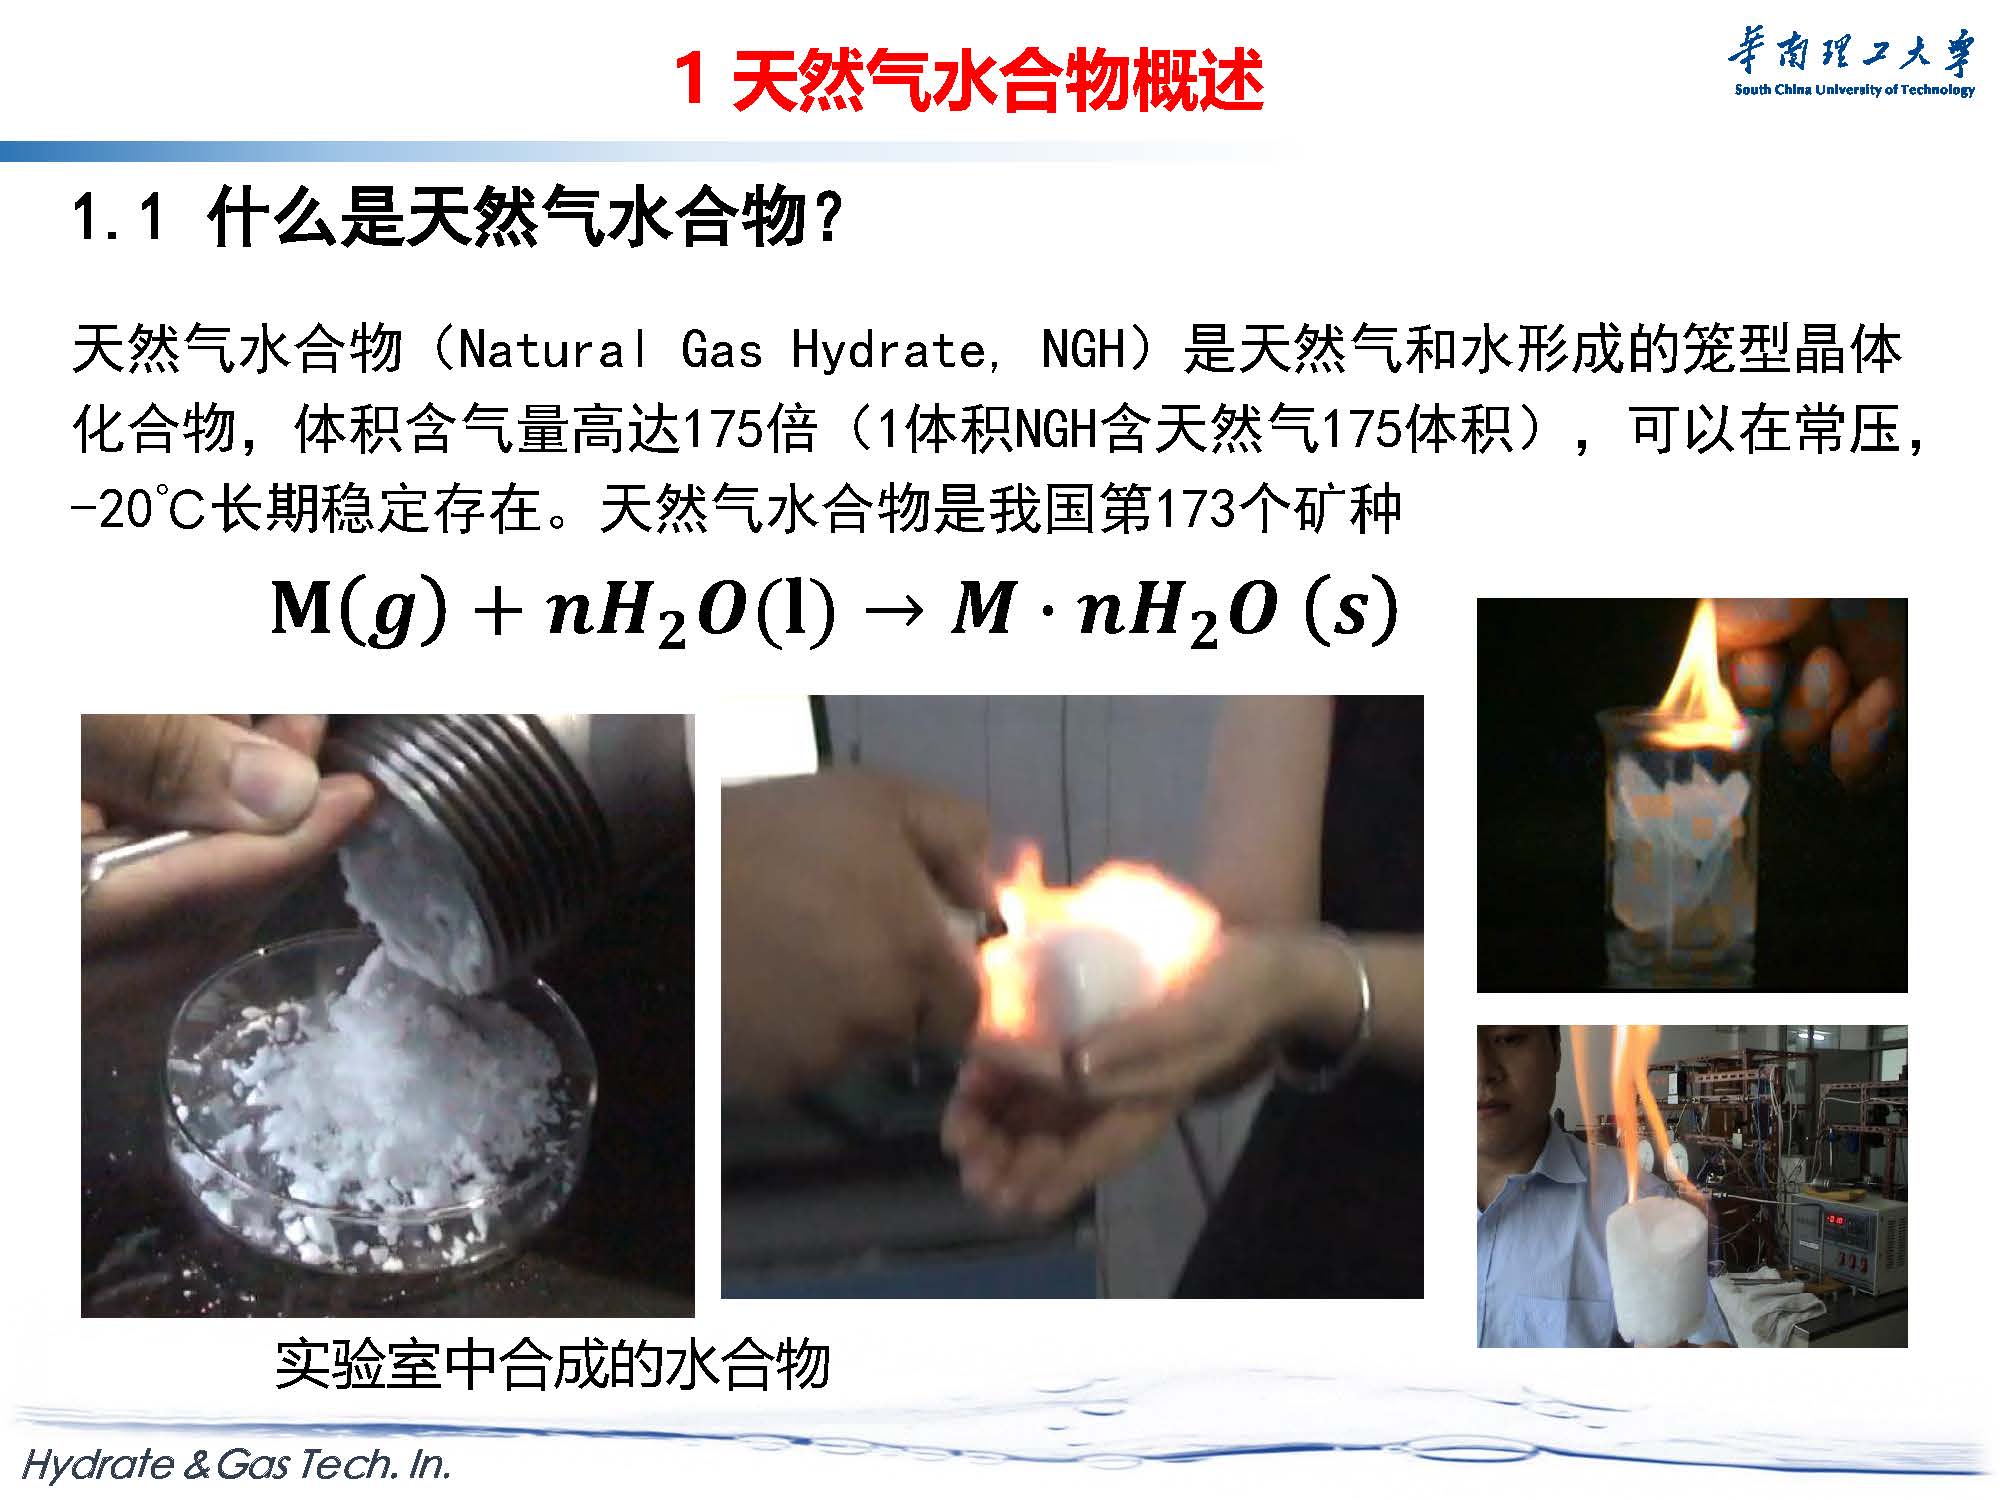 天然气水合物开采与新材料探索-forGJX_页面_03.jpg